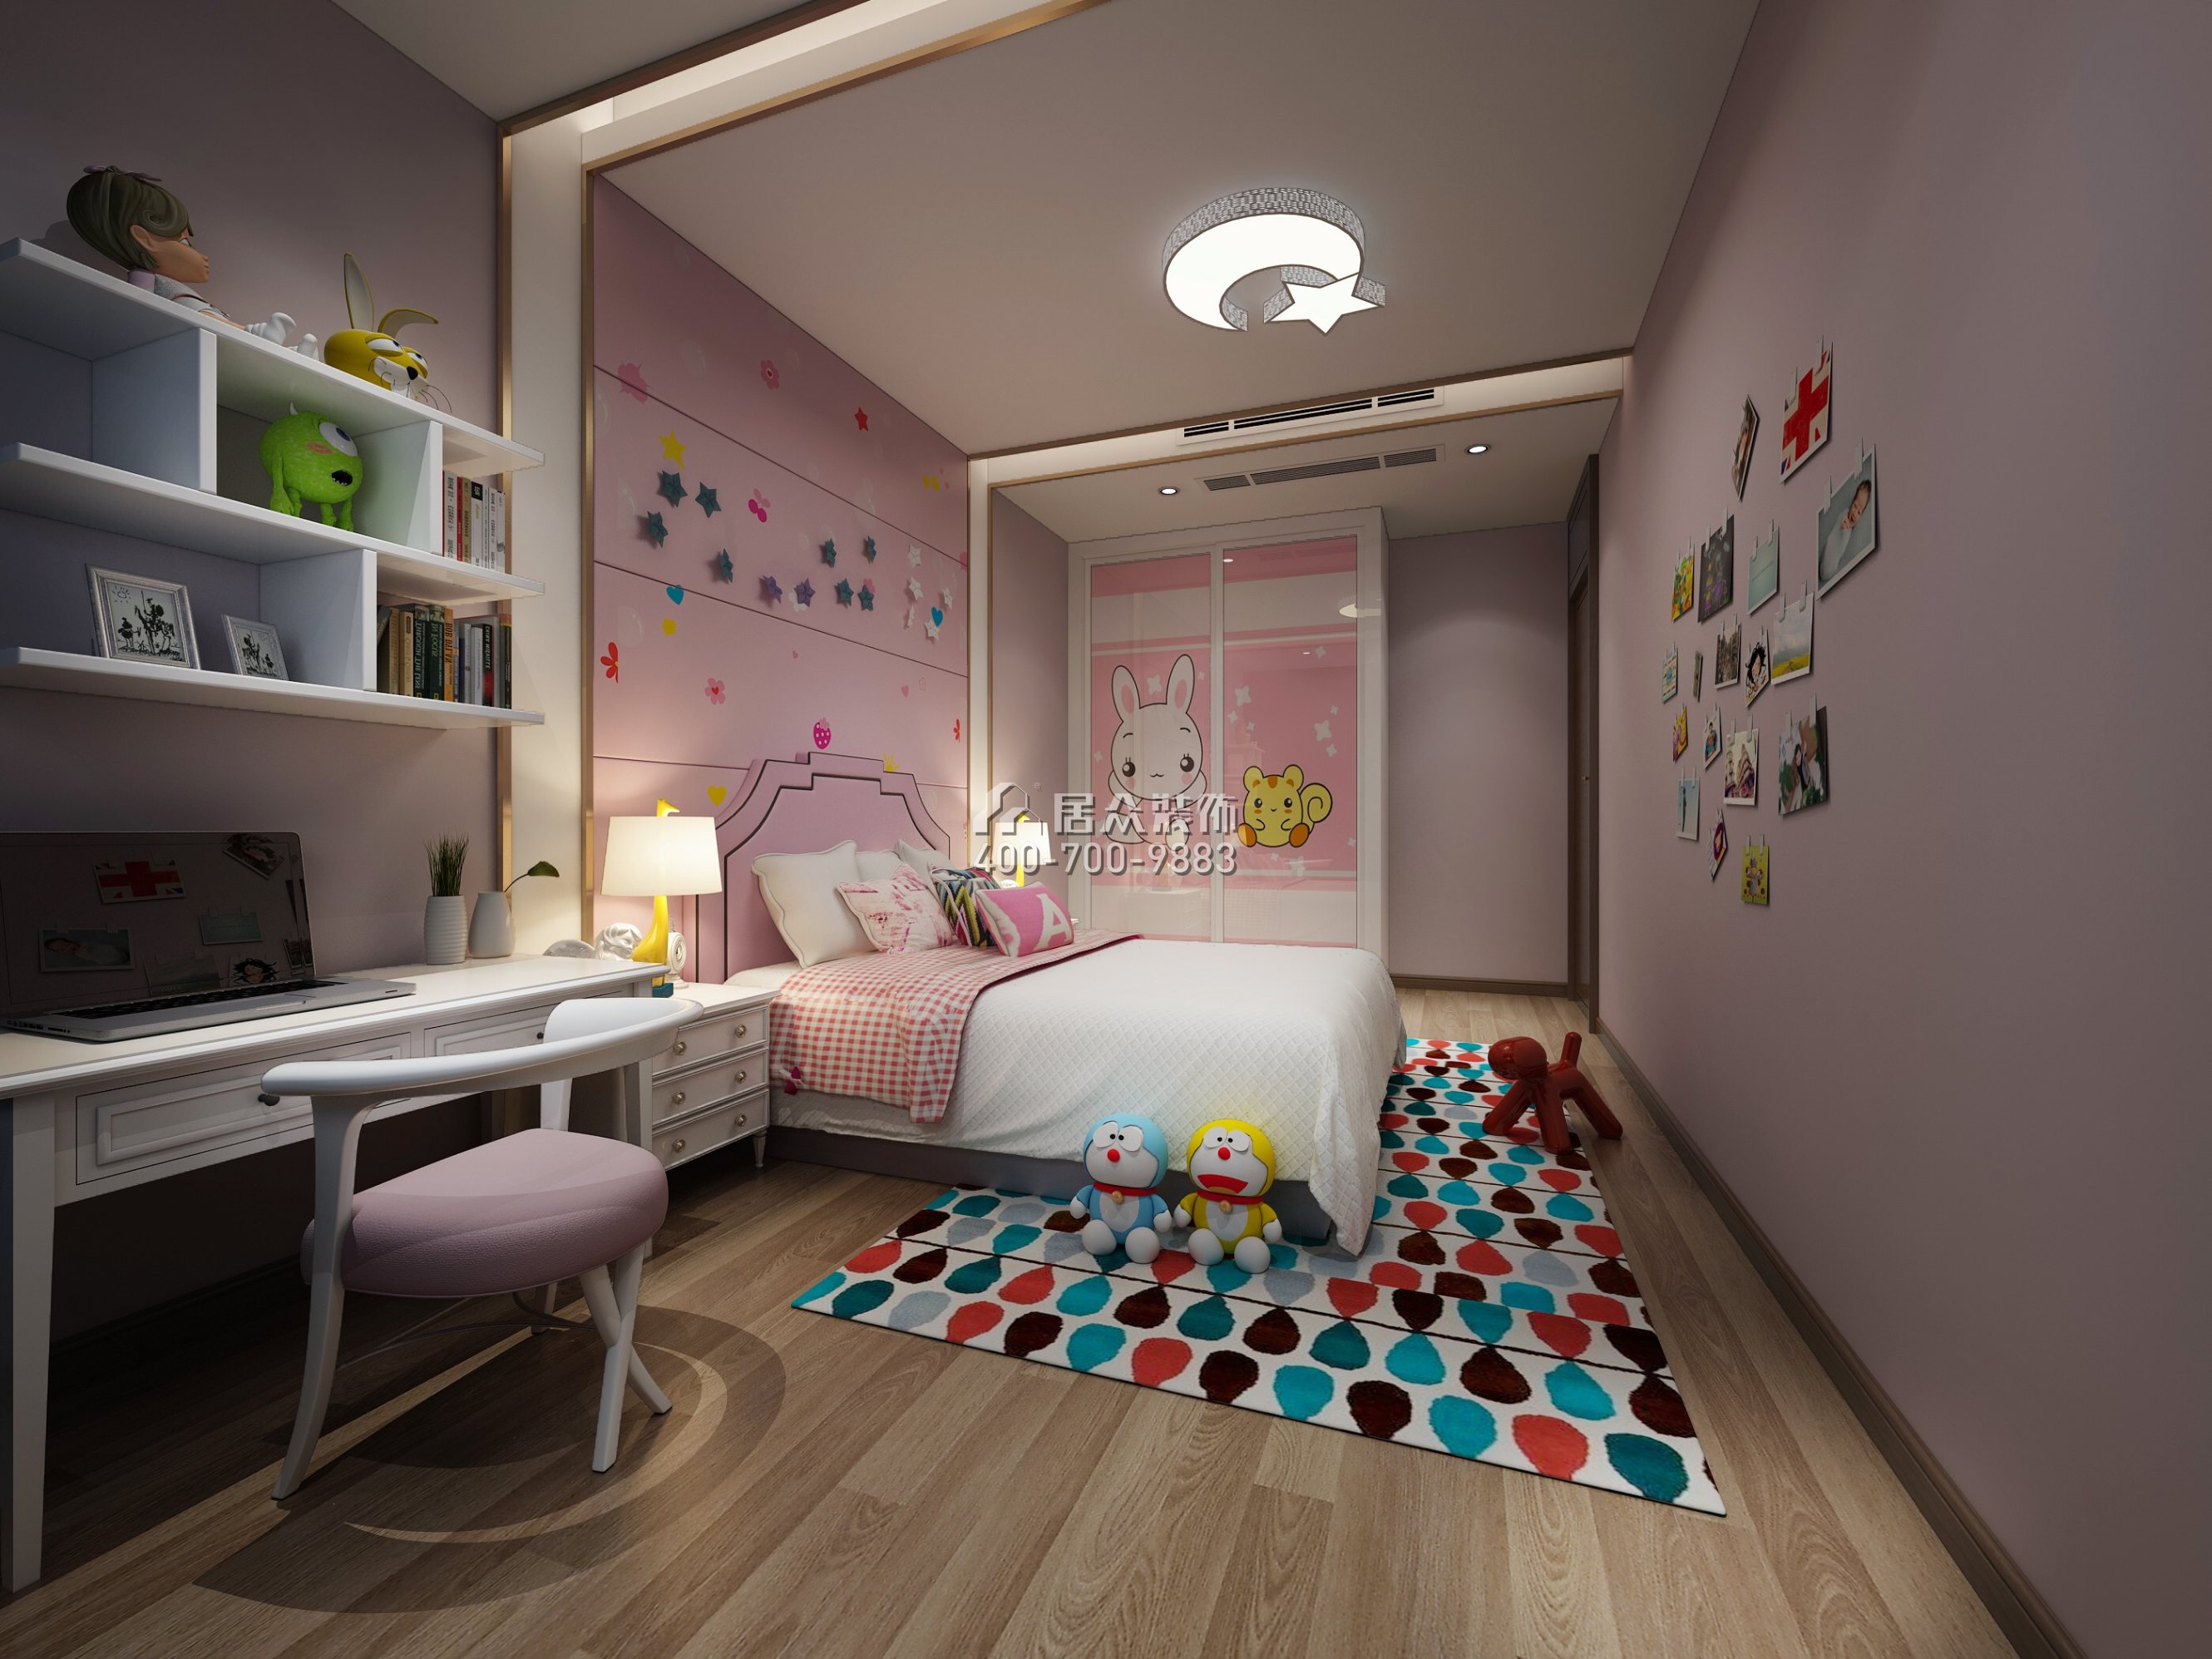 江濱華府240平方米現代簡約風格別墅戶型兒童房裝修效果圖